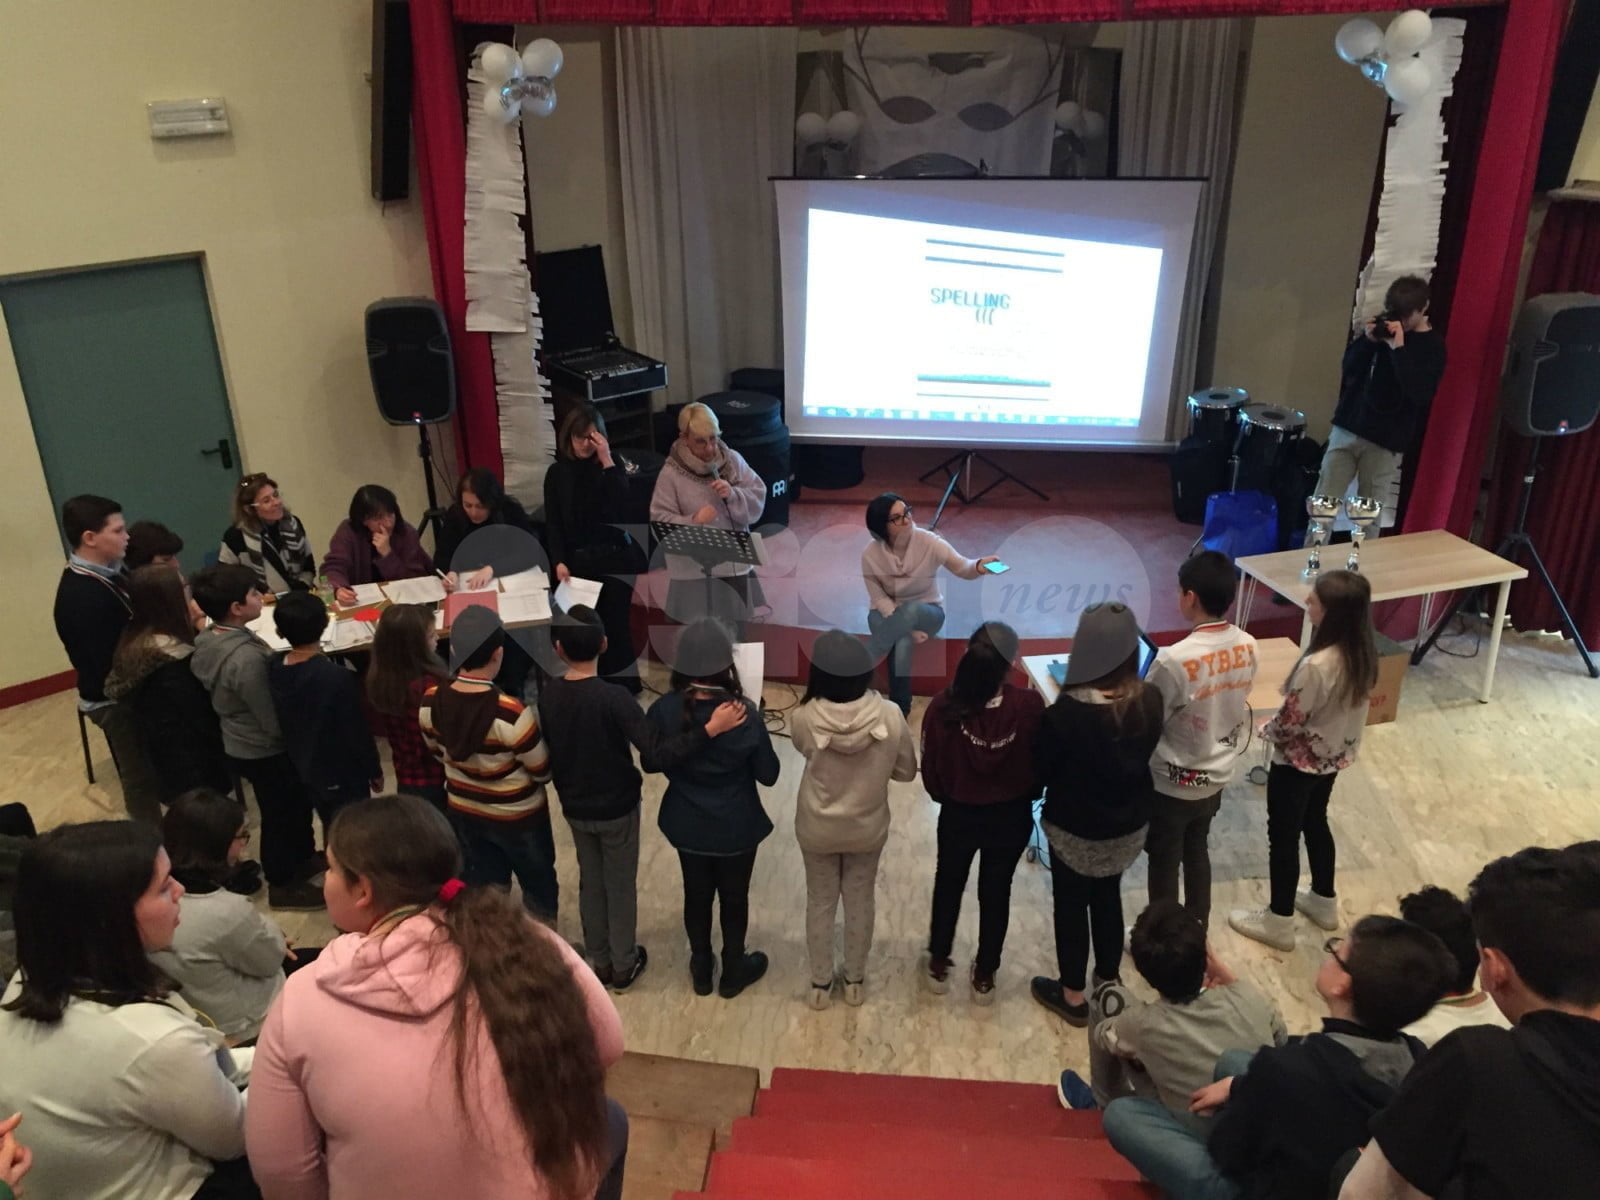 Spelling Bee Race, all'Istituto Comprensivo Assisi 3 di Petrignano si compita in inglese